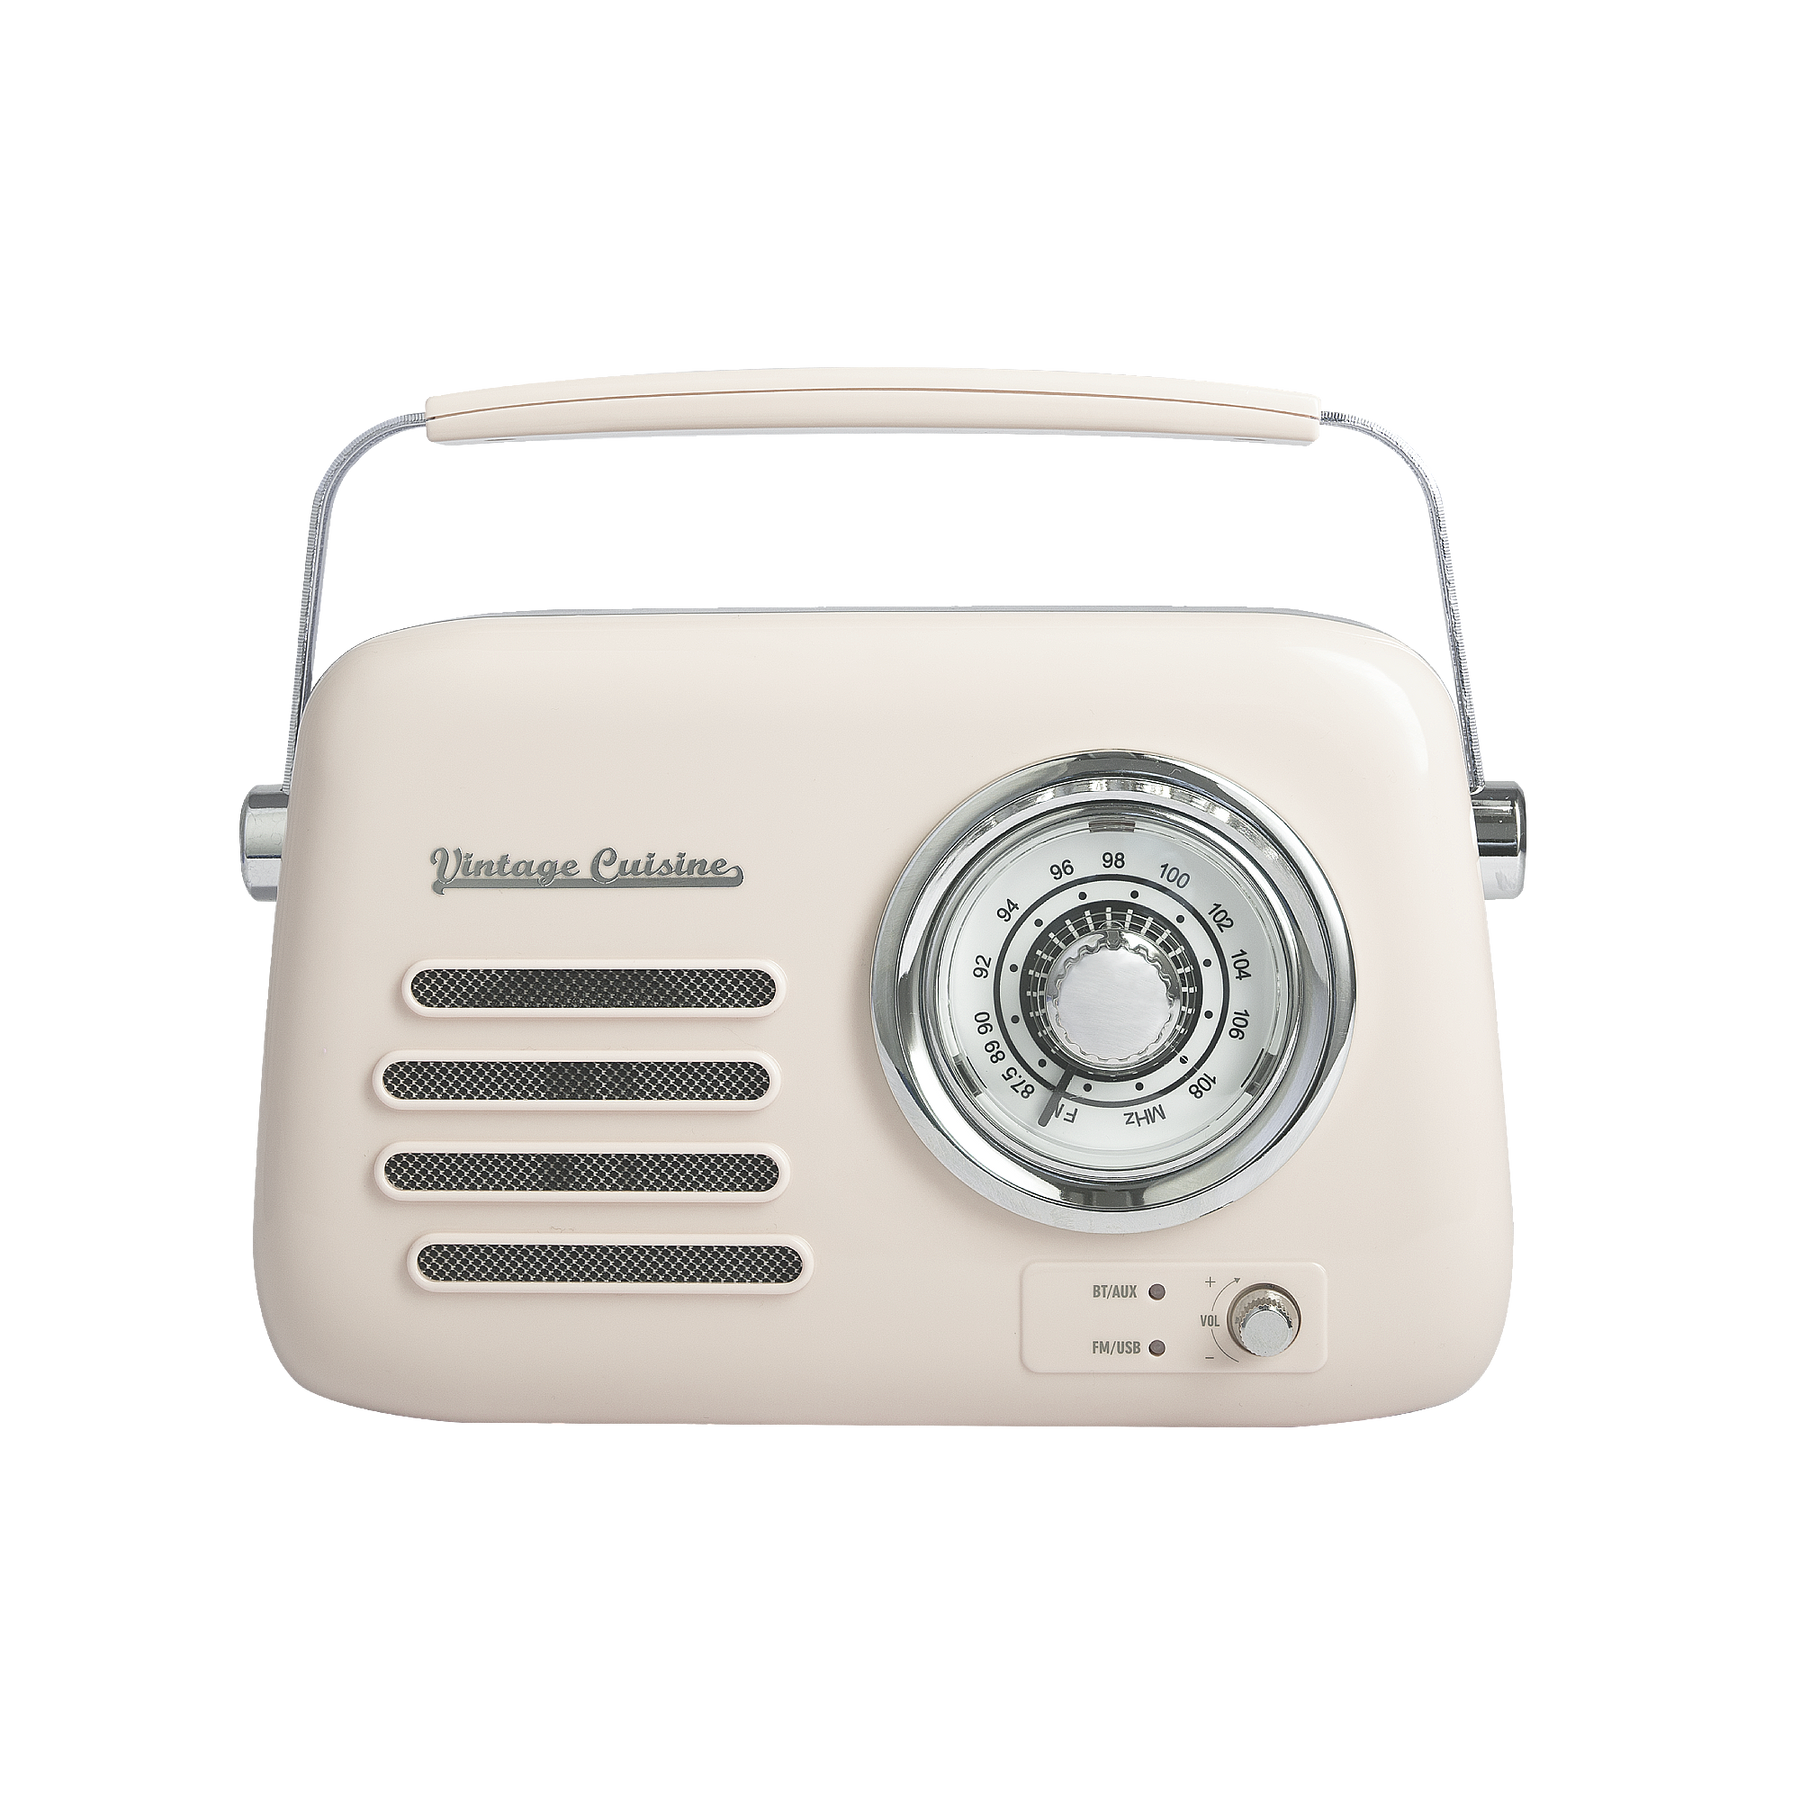 Radio chromée rétro Vintage Cuisine avec haut-parleur Bluetooth 2.0